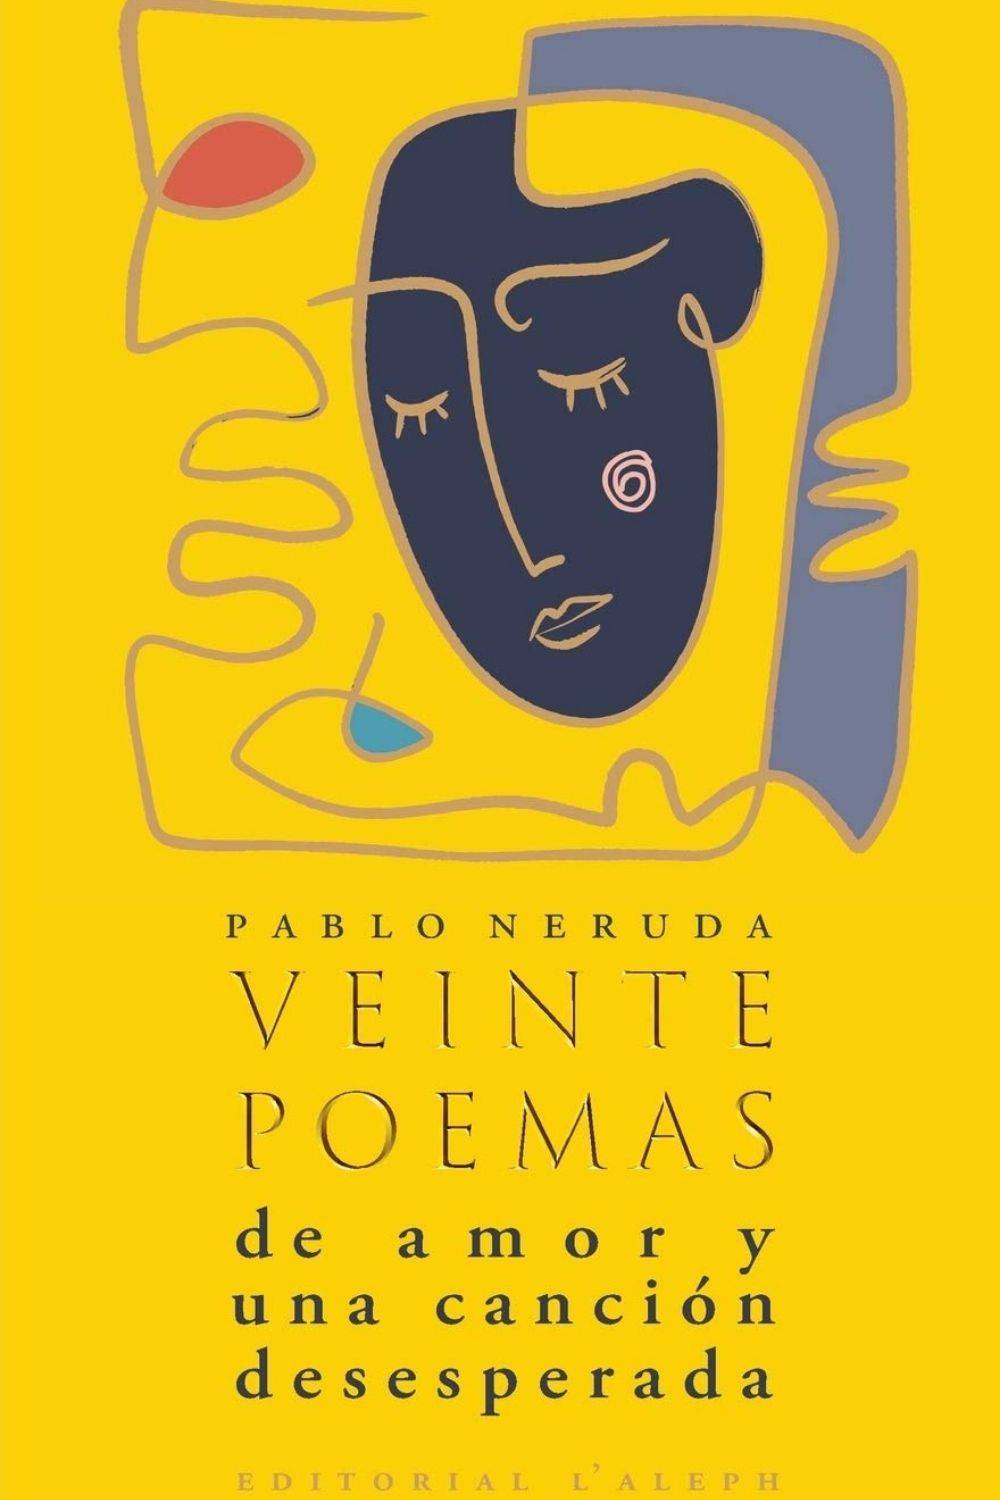 ‘Veinte poemas de amor y una canción desesperada’ de Pablo Neruda